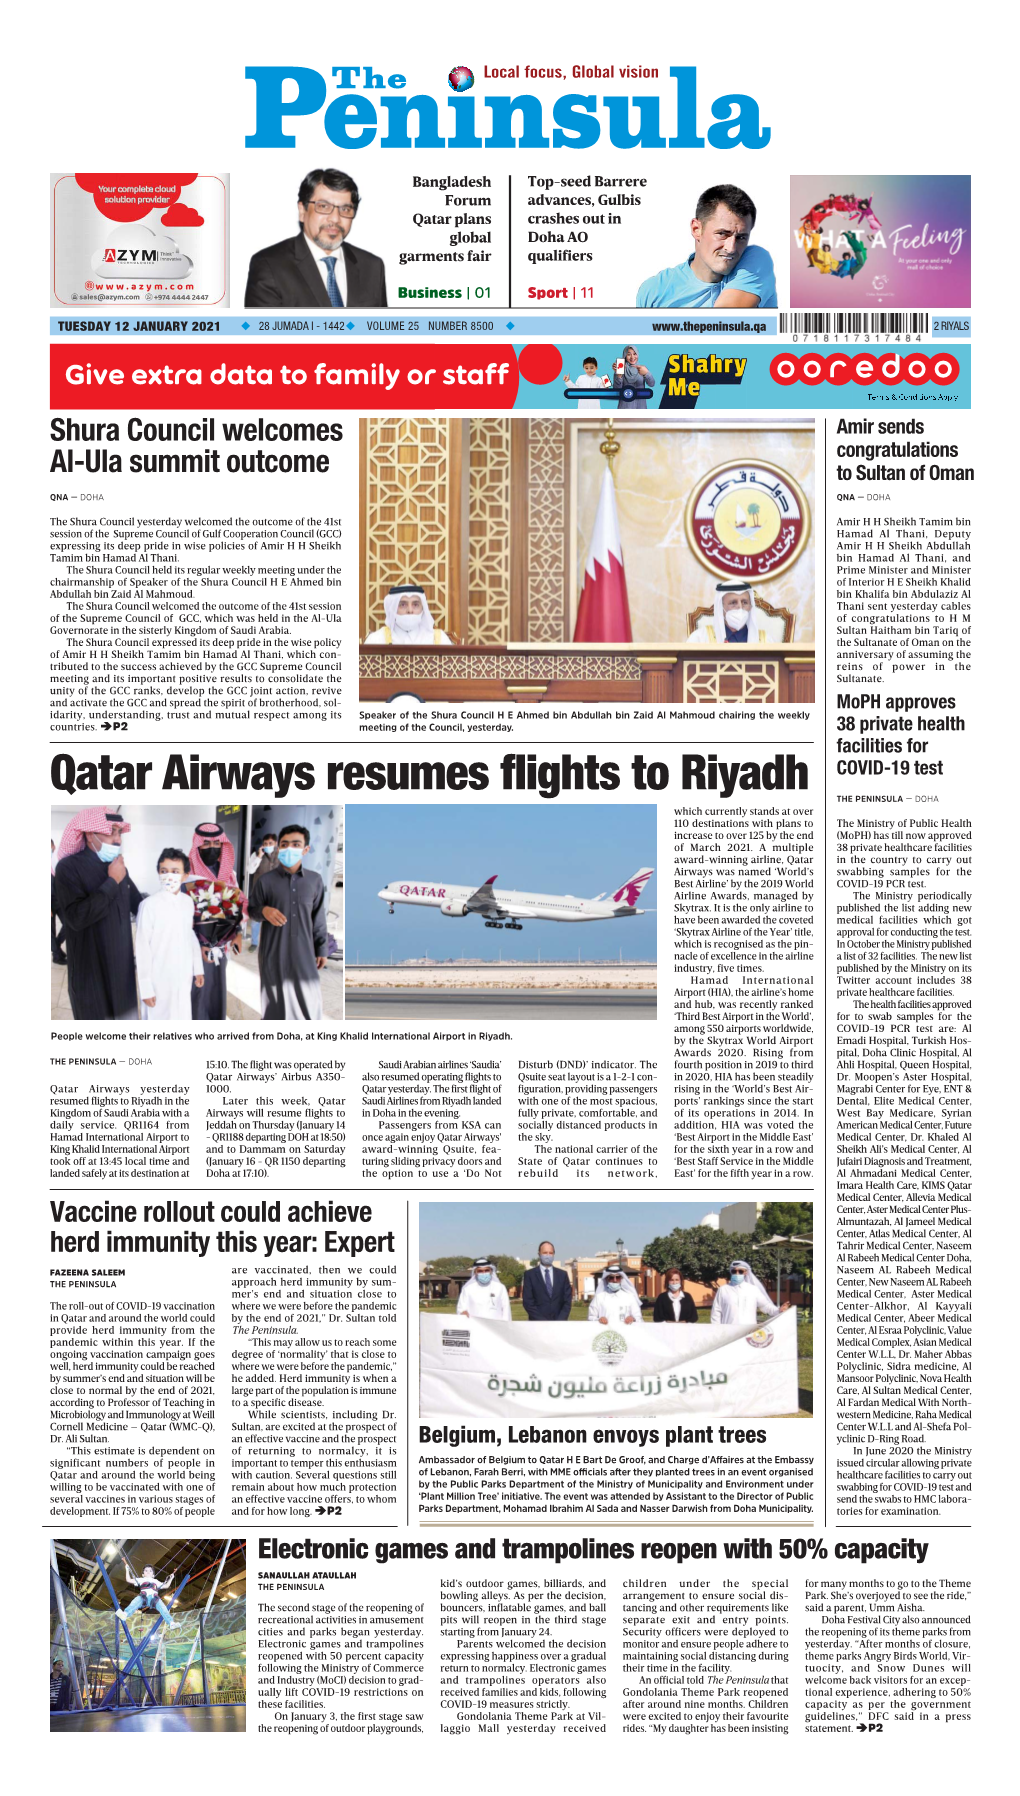 Qatar Airways Resumes Flights to Riyadh